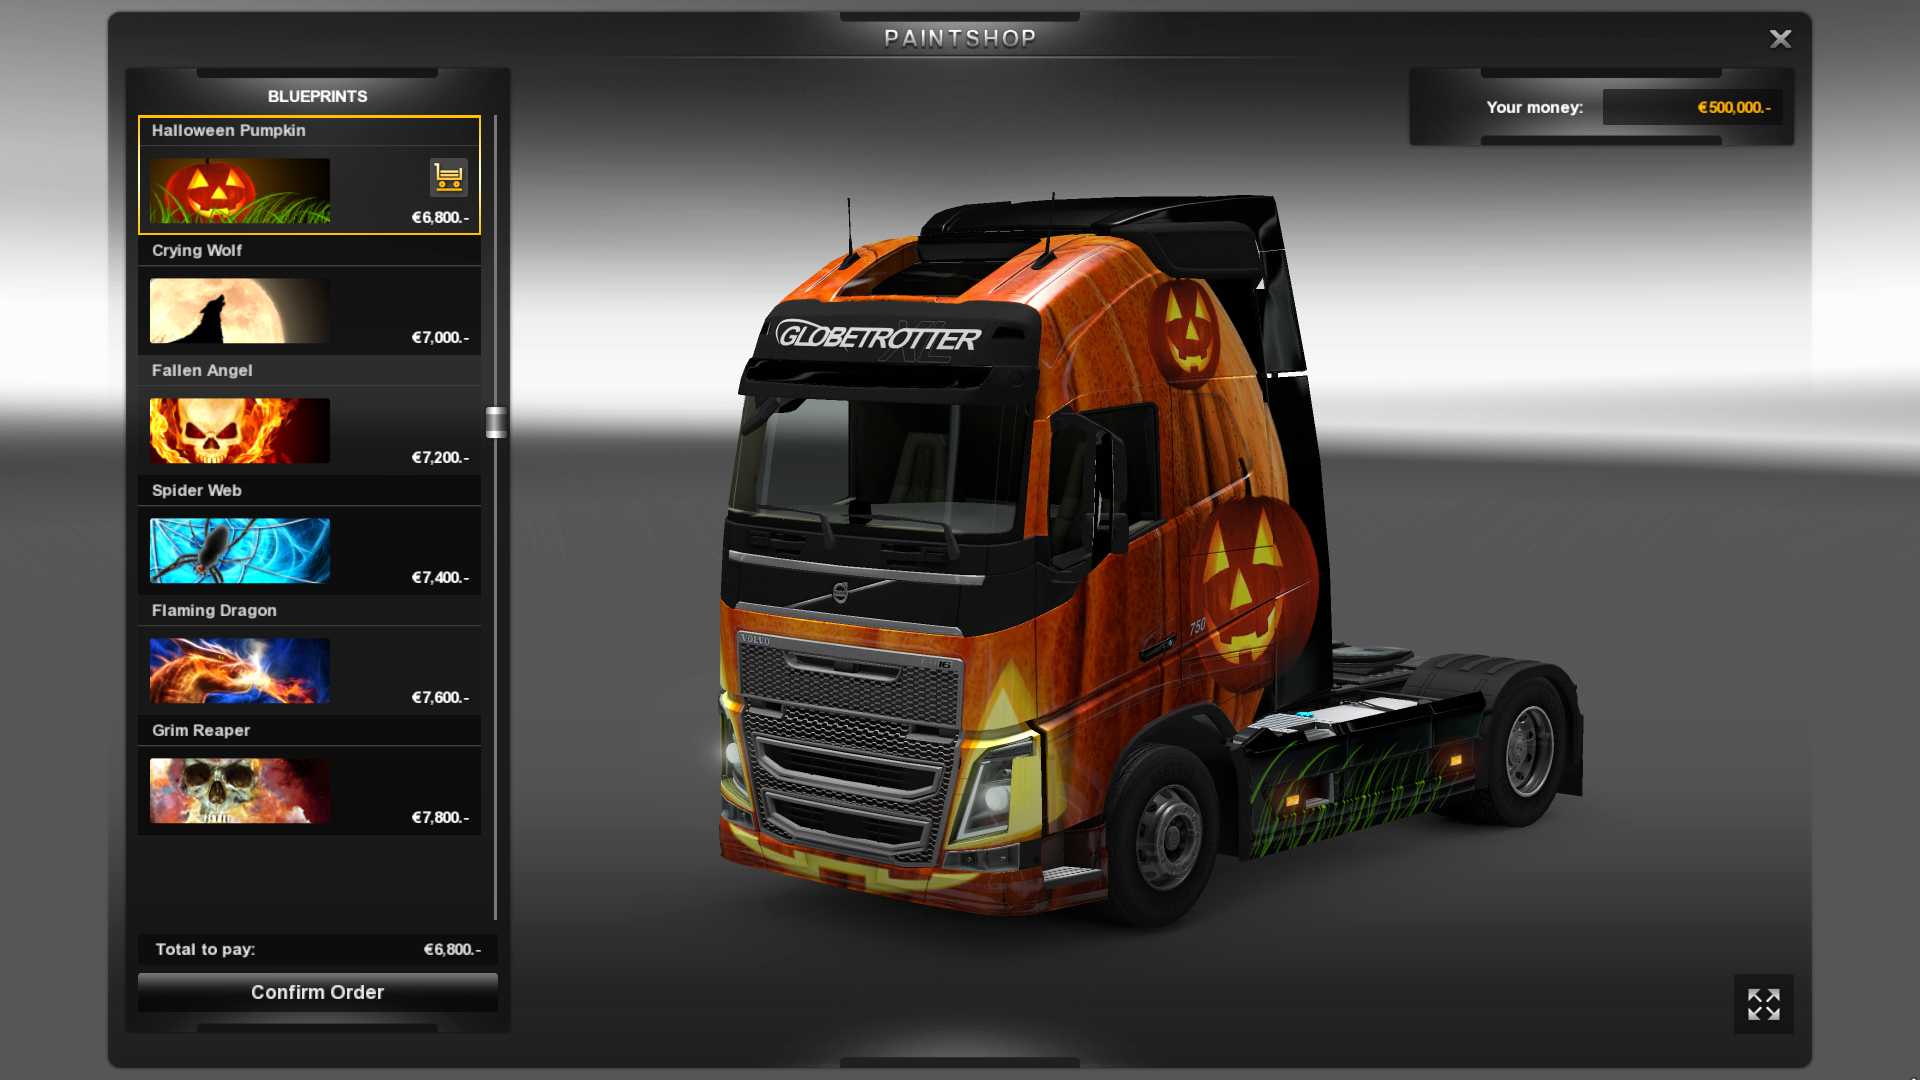 Как заработать в euro truck simulator 2 деньги